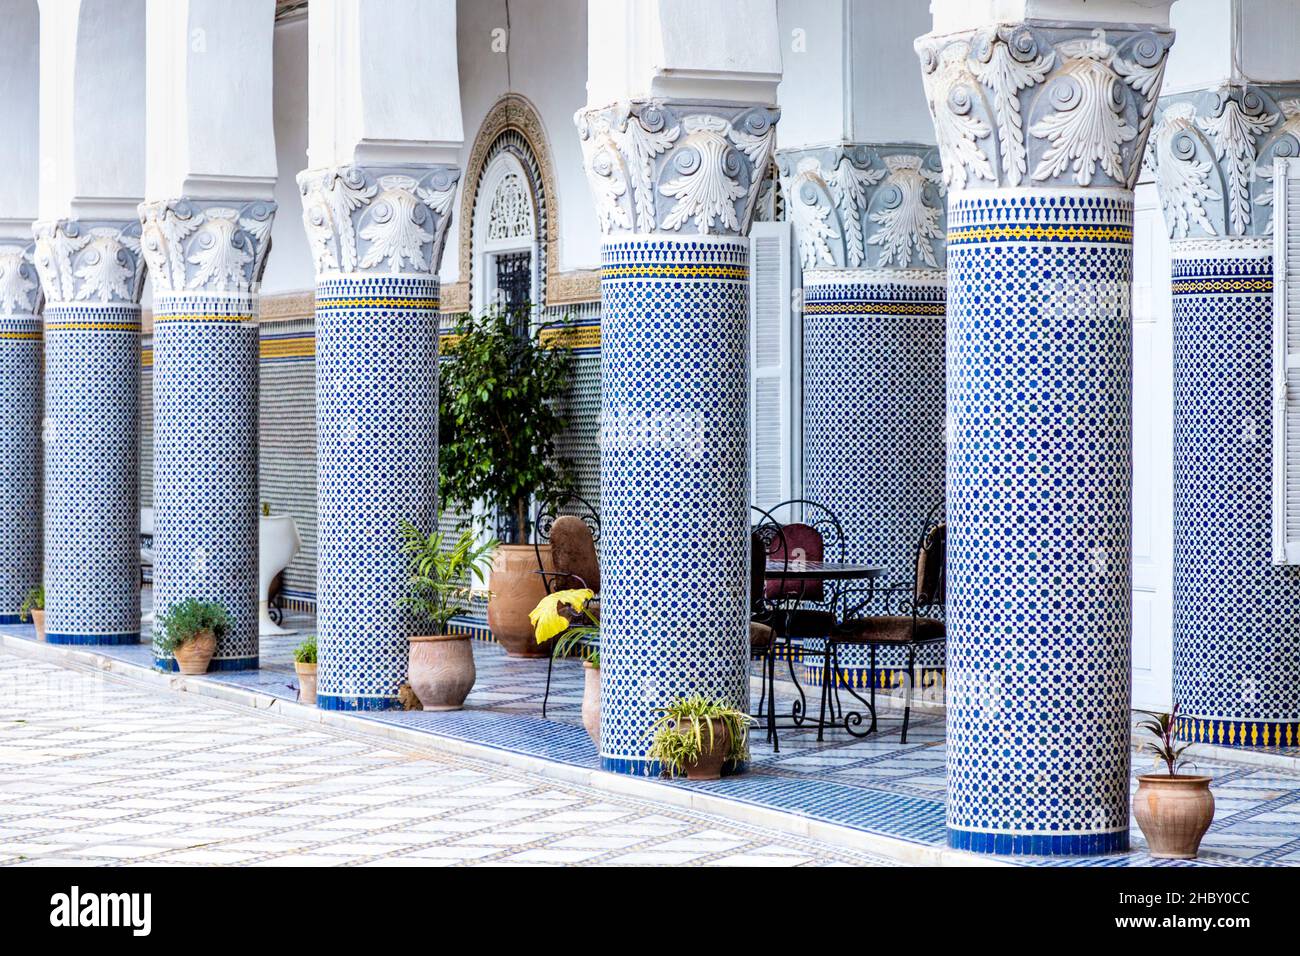 Detail der orientalischen Architektur eines marokkanischen Palastes, Säulen und Mosaikfliesen an der Wand, Palais El Mokri, Fes, Marokko Stockfoto